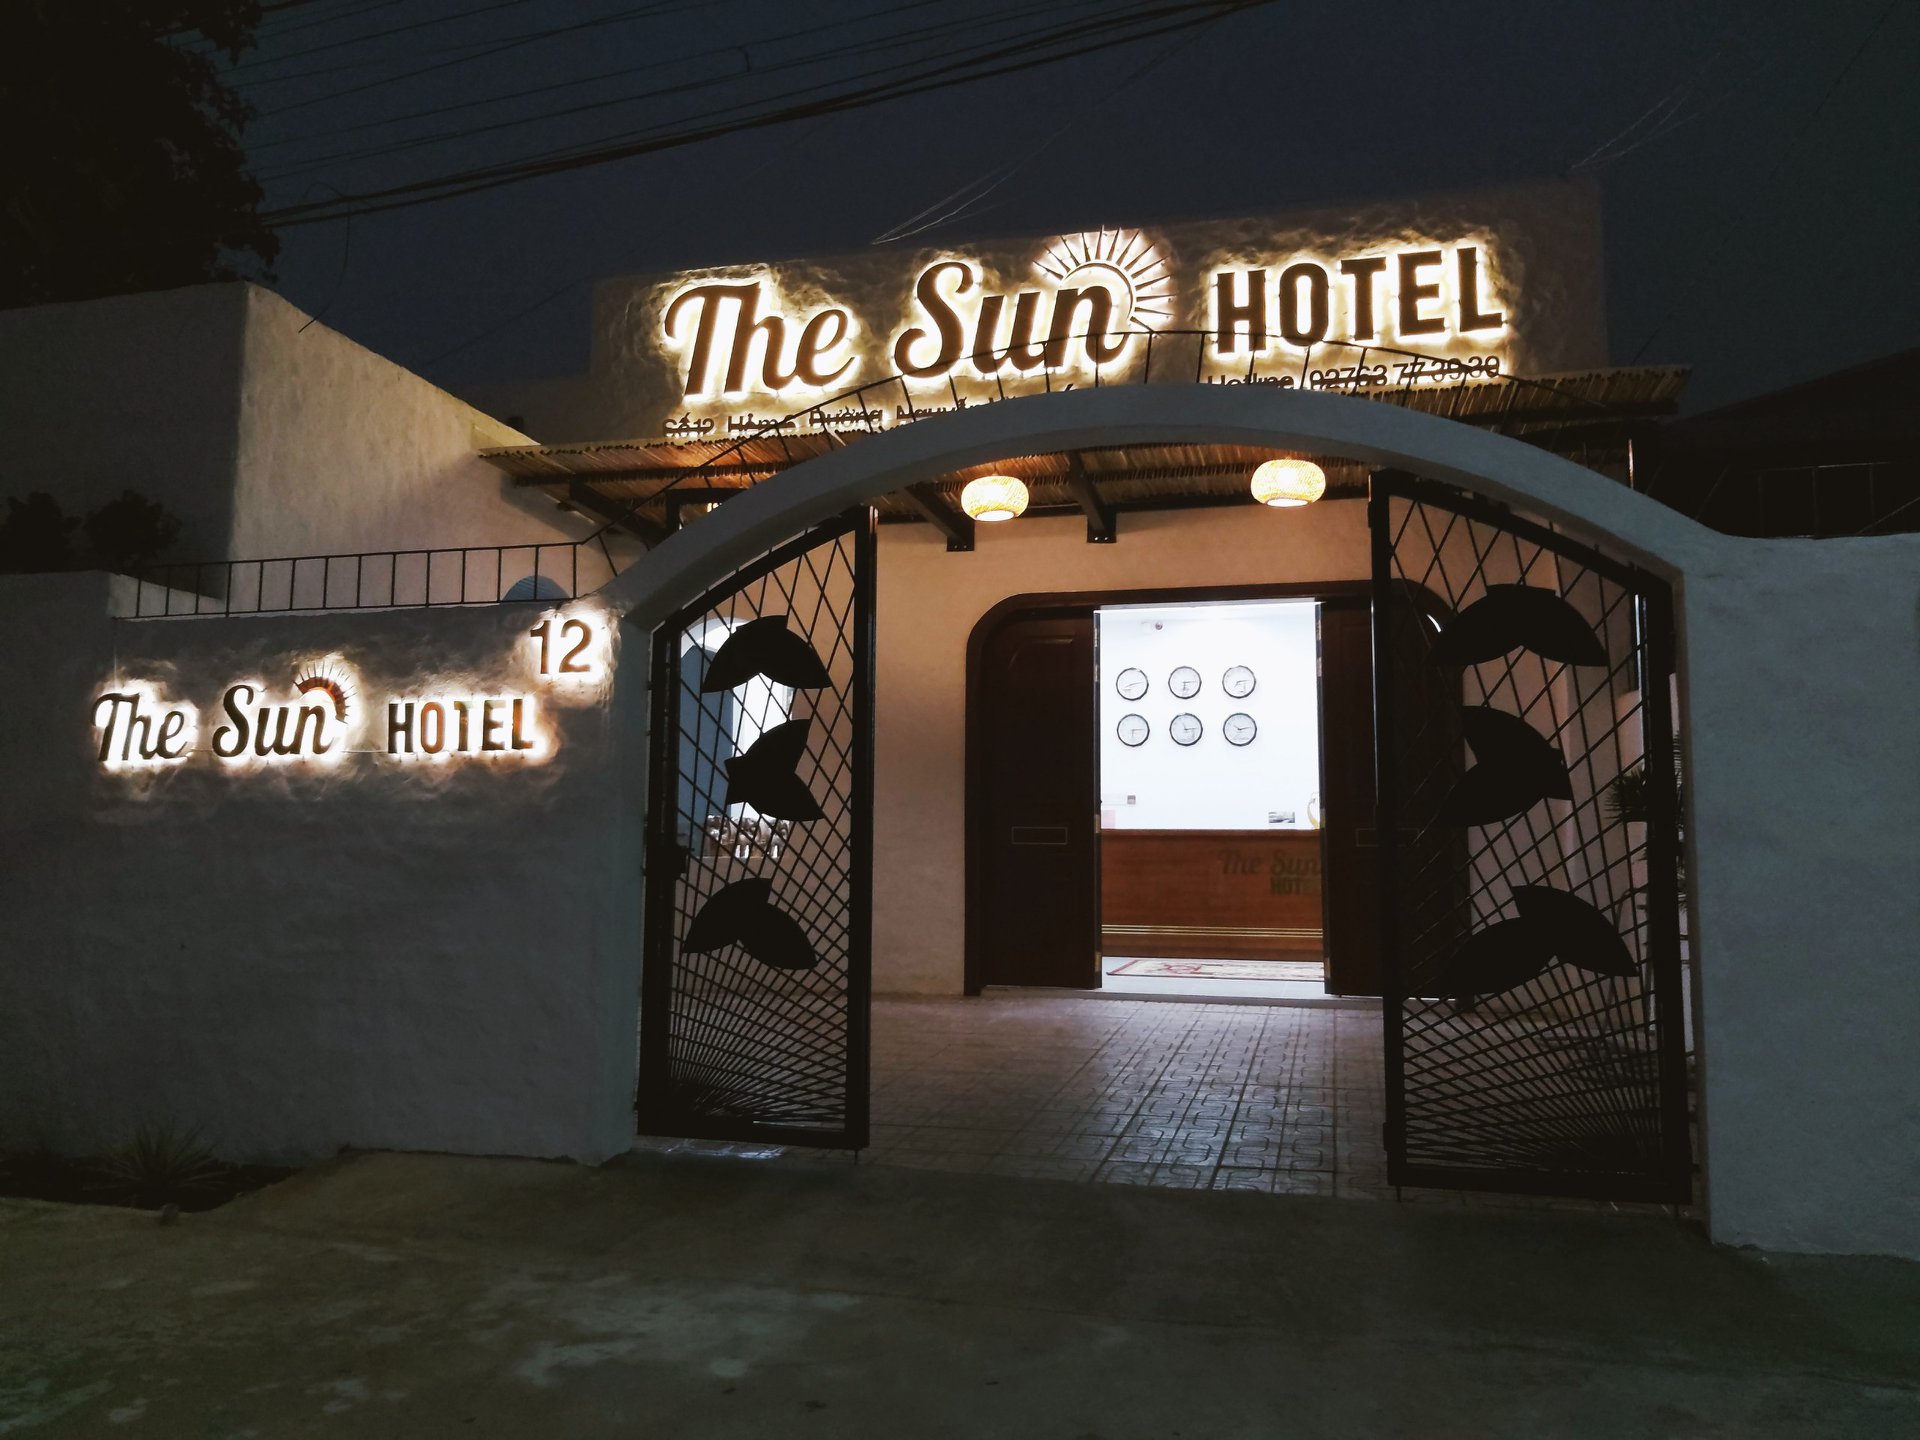  The Sun Hotel